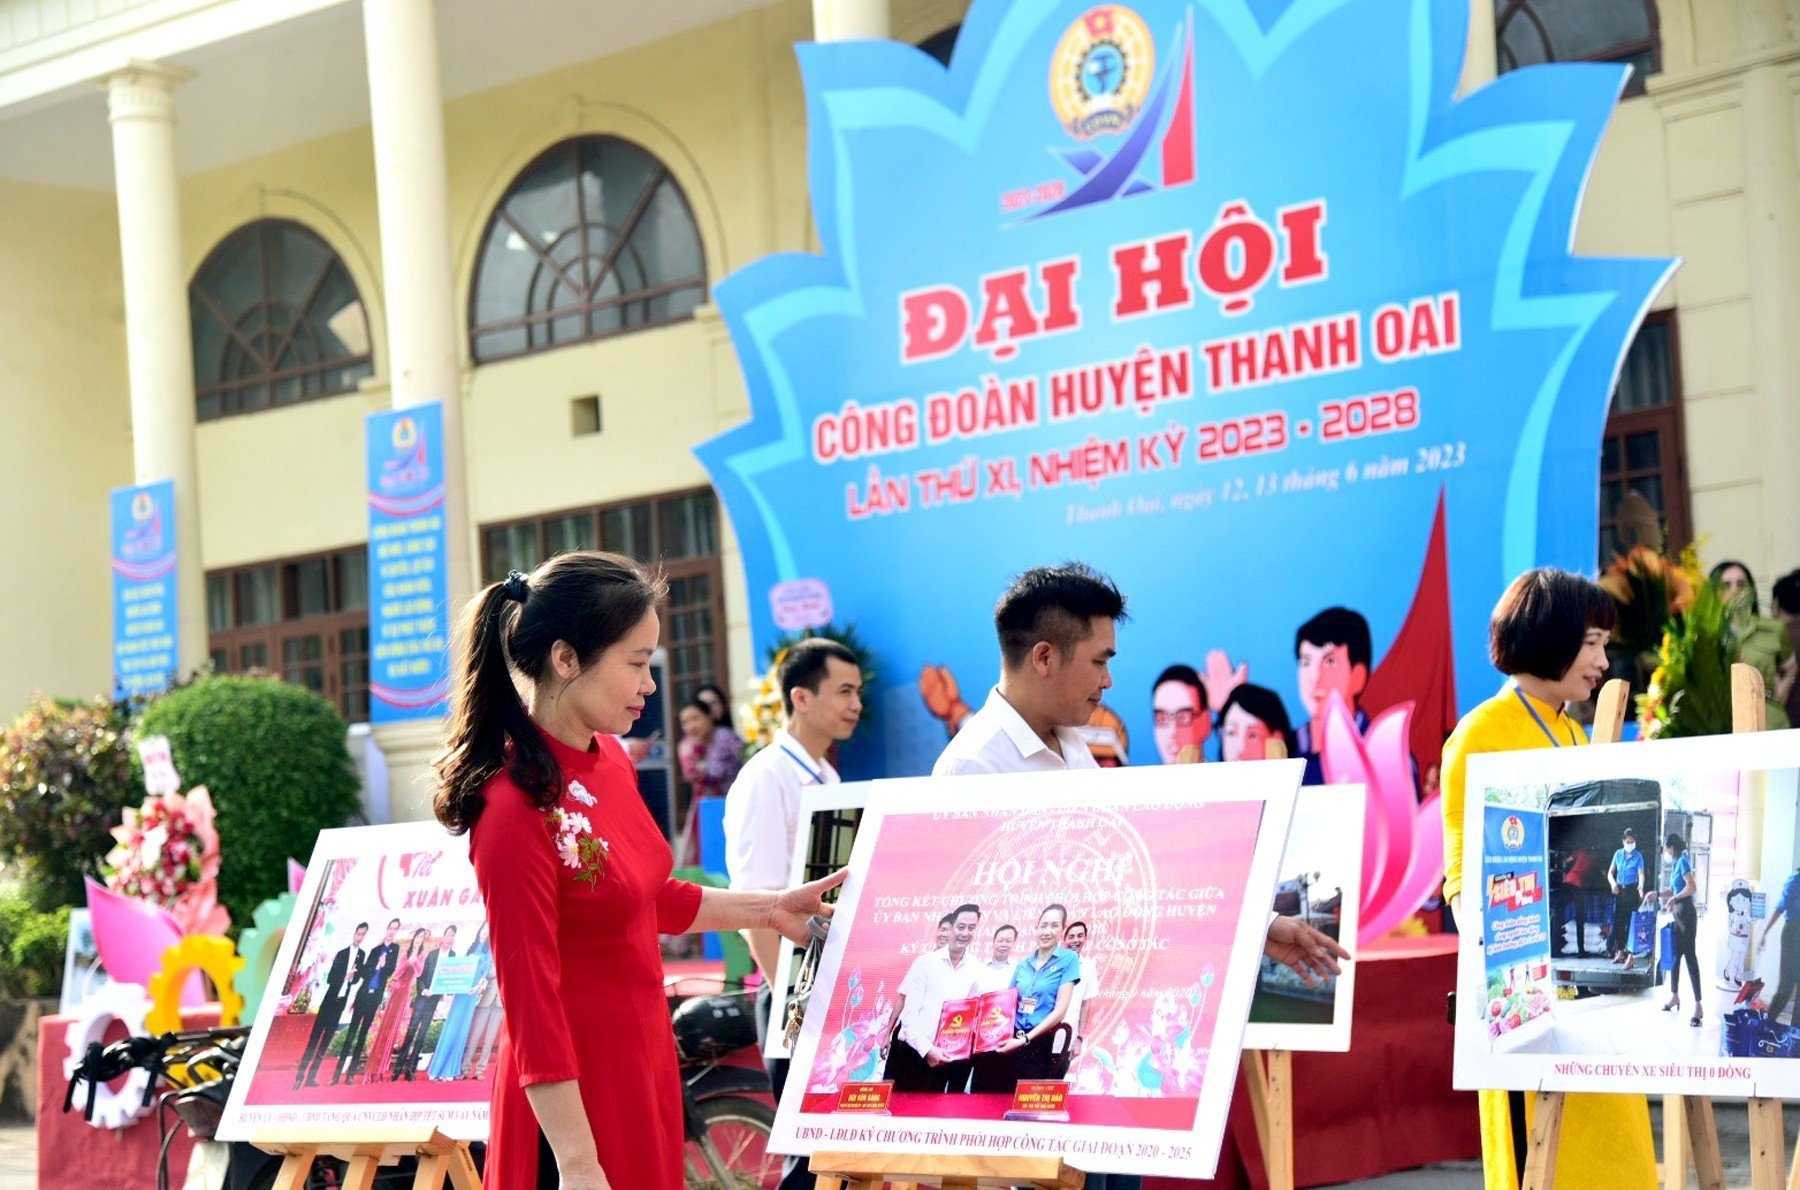 TRỰC TUYẾN HÌNH ẢNH: "Ngày hội" lớn của đoàn viên Công đoàn huyện Thanh Oai